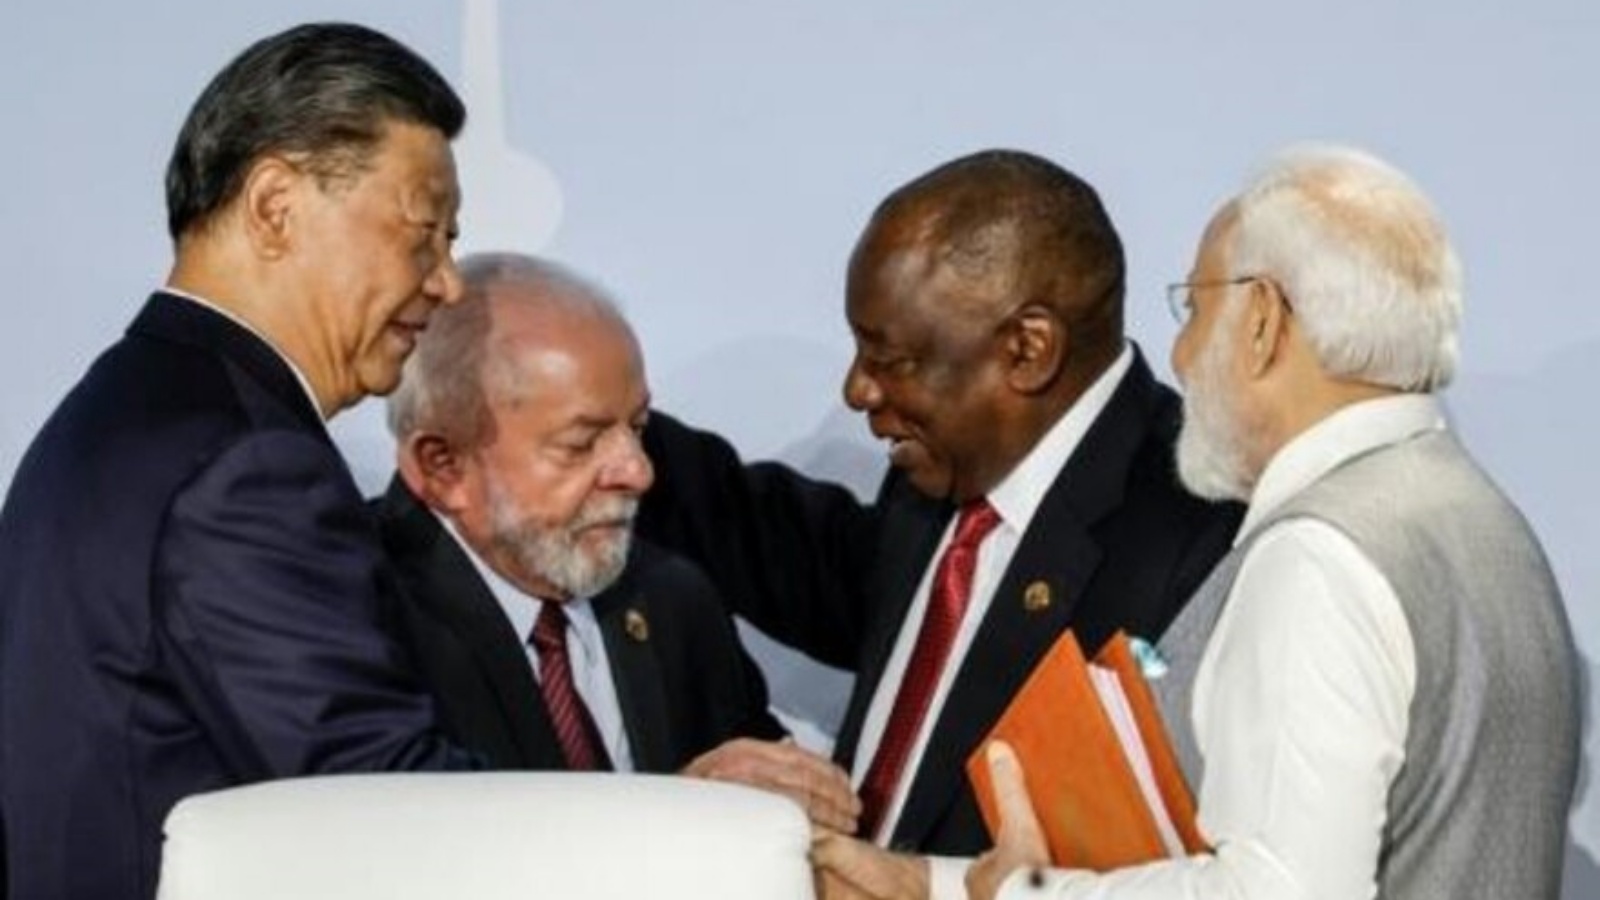 (من اليسار إلى اليمين) الرئيس الصيني شي جينبينغ، والرئيس البرازيلي لويس إيناسيو لولا دا سيلفا، ورئيس جنوب أفريقيا سيريل رامابوزا، ورئيس وزراء الهند ناريندرا مودي خلال قمة بريكس في مركز ساندتون للمؤتمرات في جوهانسبرغ في 24 أغسطس 2023